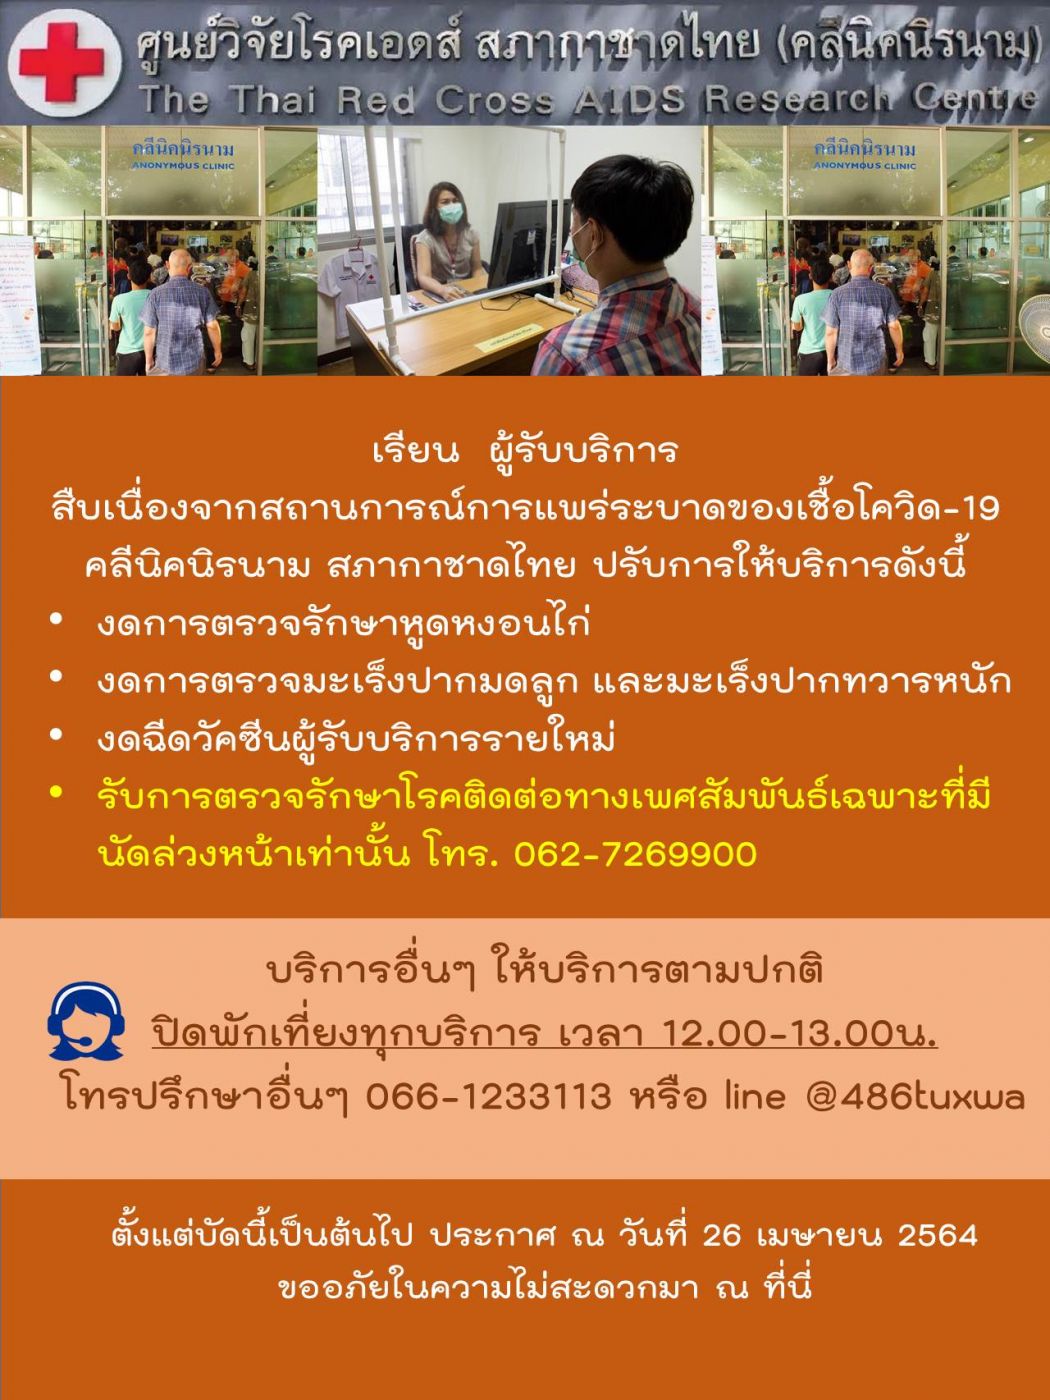 คลีนิคนิรนาม สภากาชาดไทย ปรับบริการลดความเสี่ยงต่อการแพร่ระบาดของเชื้อไวรัสโควิด-19 รอบใหม่